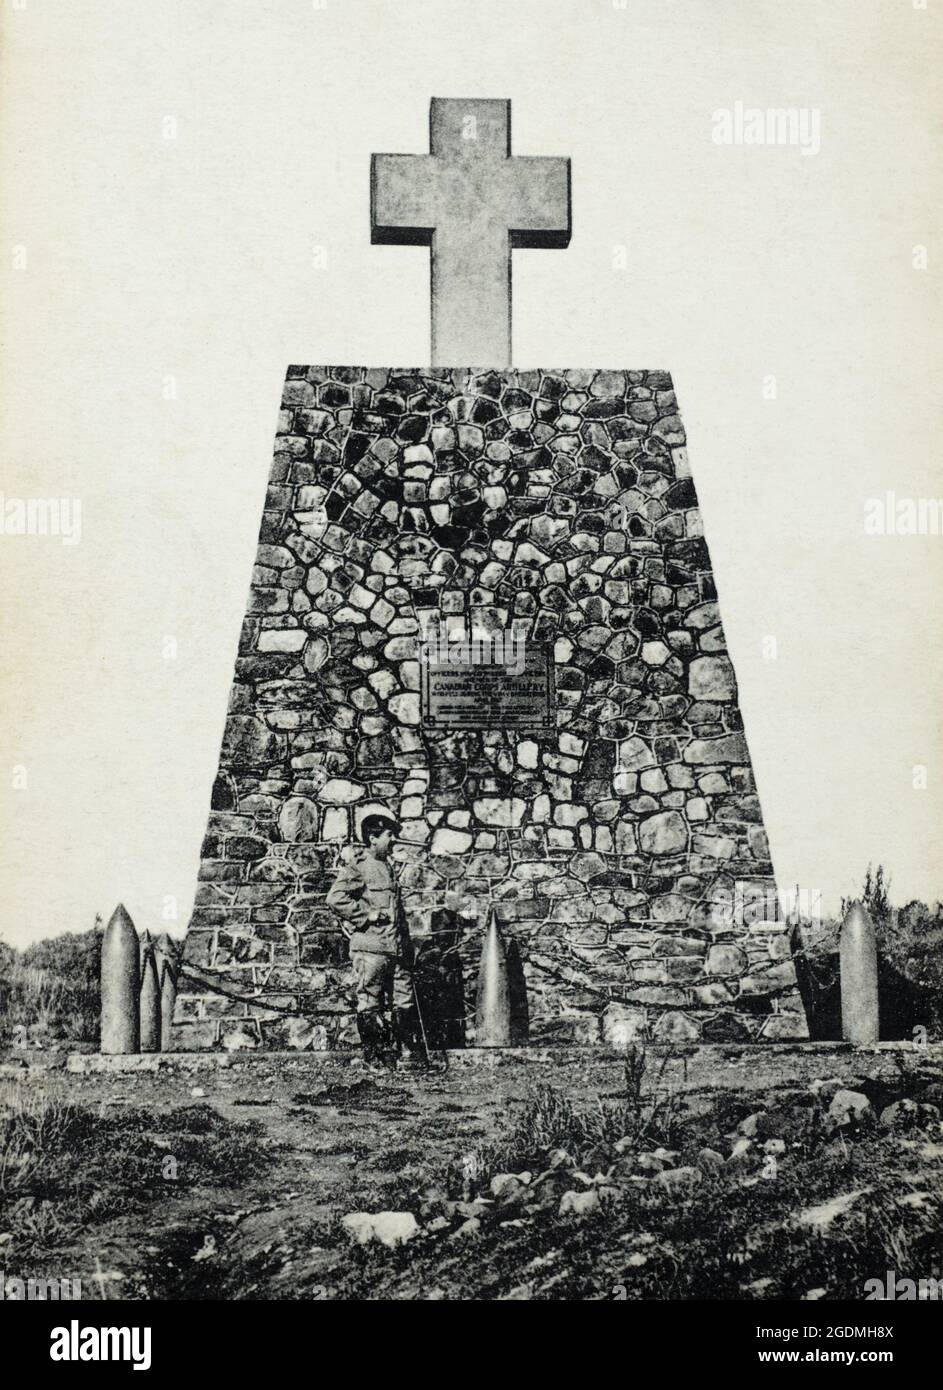 Eine historische Ansicht des Denkmals zur Erinnerung an die Offiziere und Soldaten des kanadischen Artilleriekorps, die ihre Rolle bei der Eroberung von Vimy Ridge, 1917, gespielt haben. Das Denkmal befindet sich in Thélus, Frankreich. Entnommen aus einer Postkarte c. bilde. Stockfoto